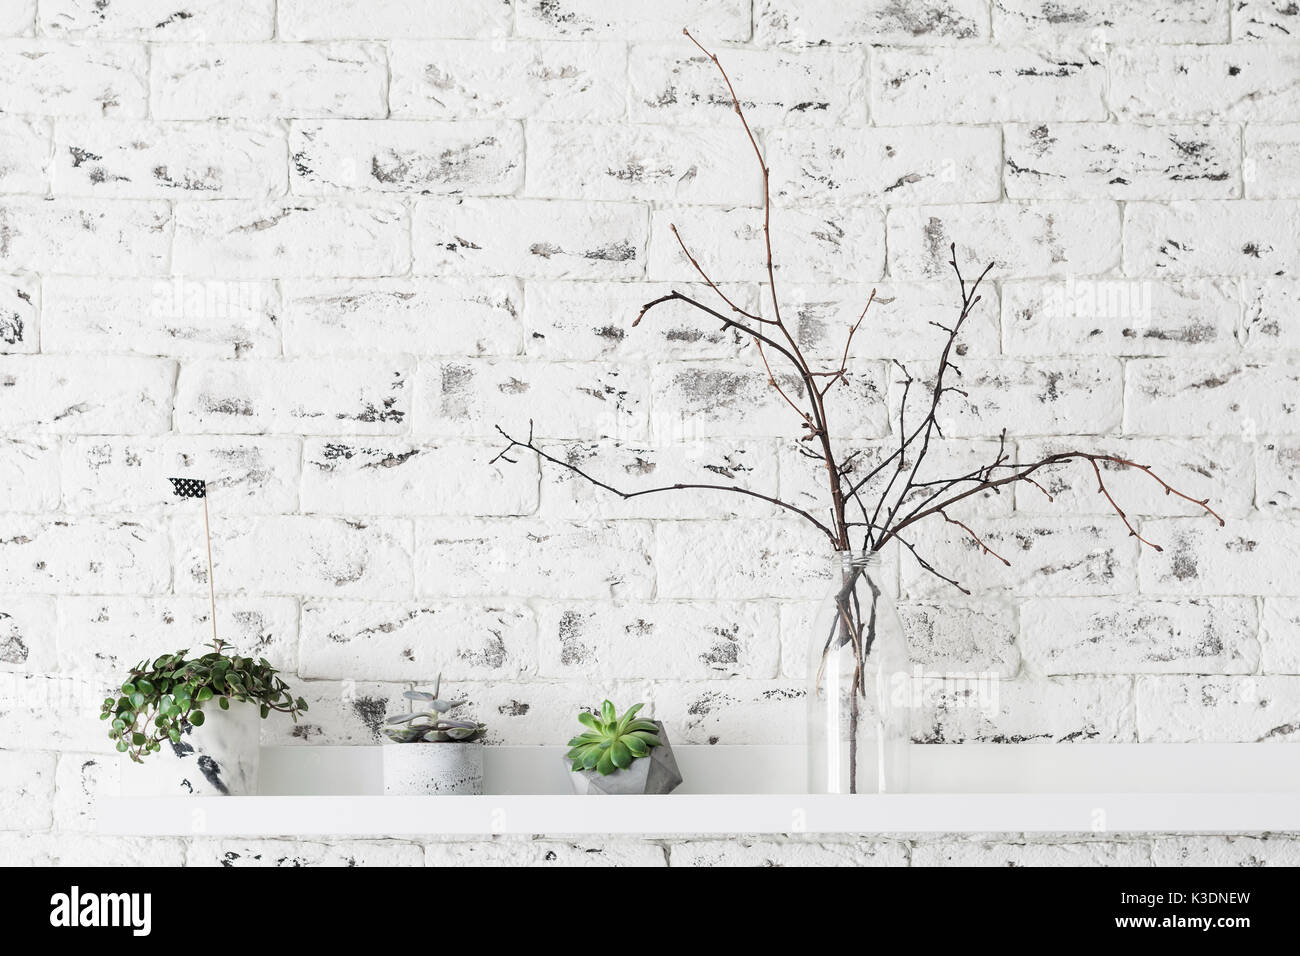 Intérieur scandinave loft moderne. Les plantes succulentes sur over white brick wall background. horizontale avec copie espace pour le texte Banque D'Images